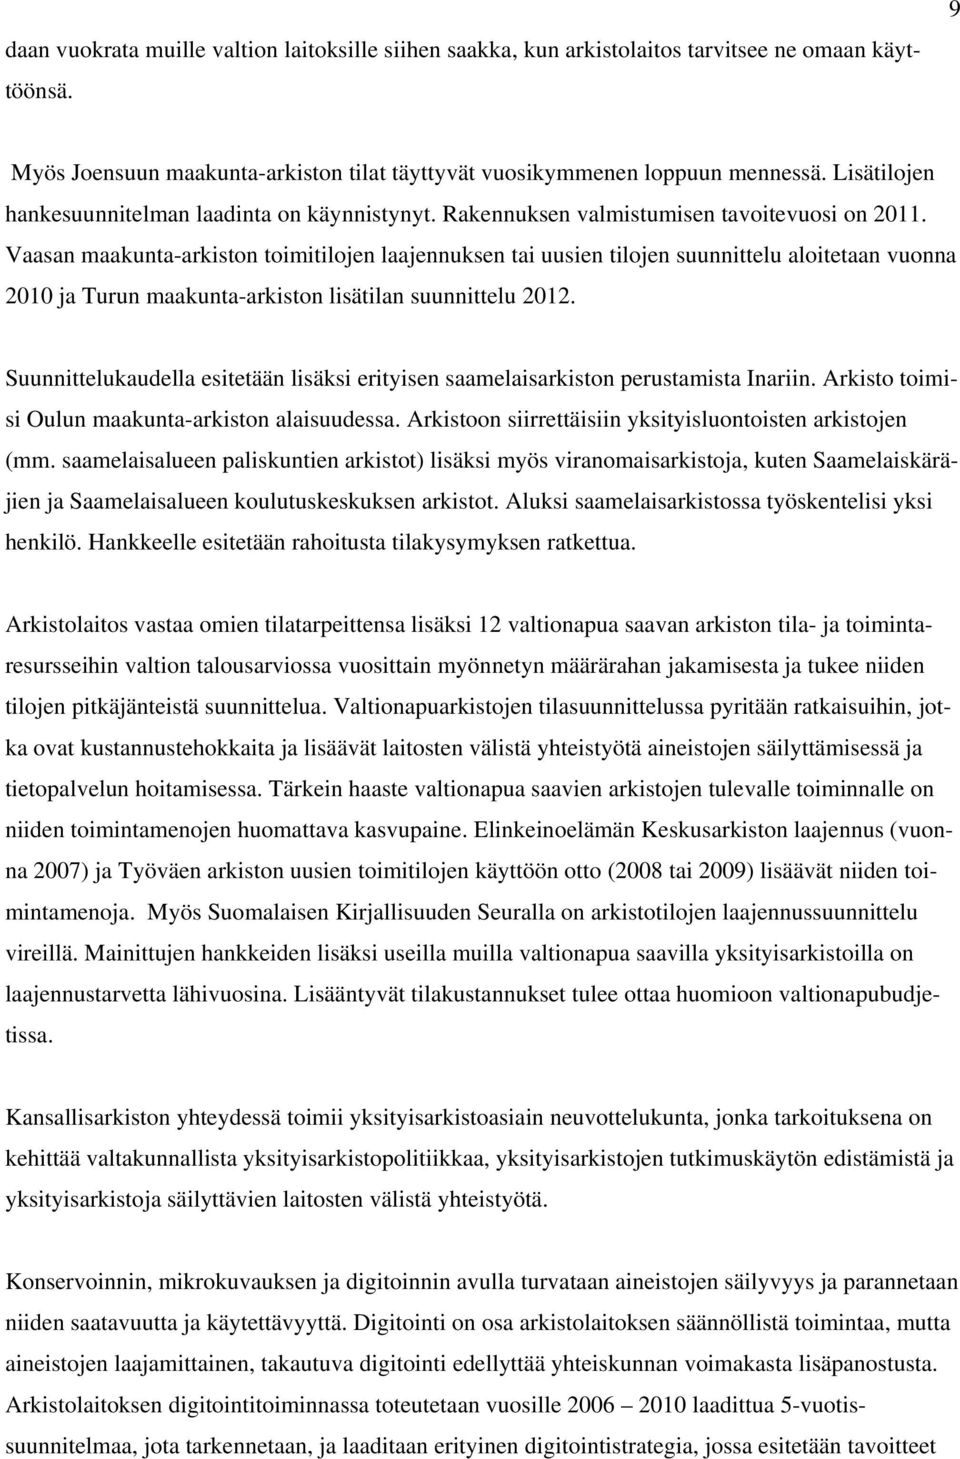 Vaasan maakunta-arkiston toimitilojen laajennuksen tai uusien tilojen suunnittelu aloitetaan vuonna 2010 ja Turun maakunta-arkiston lisätilan suunnittelu 2012.